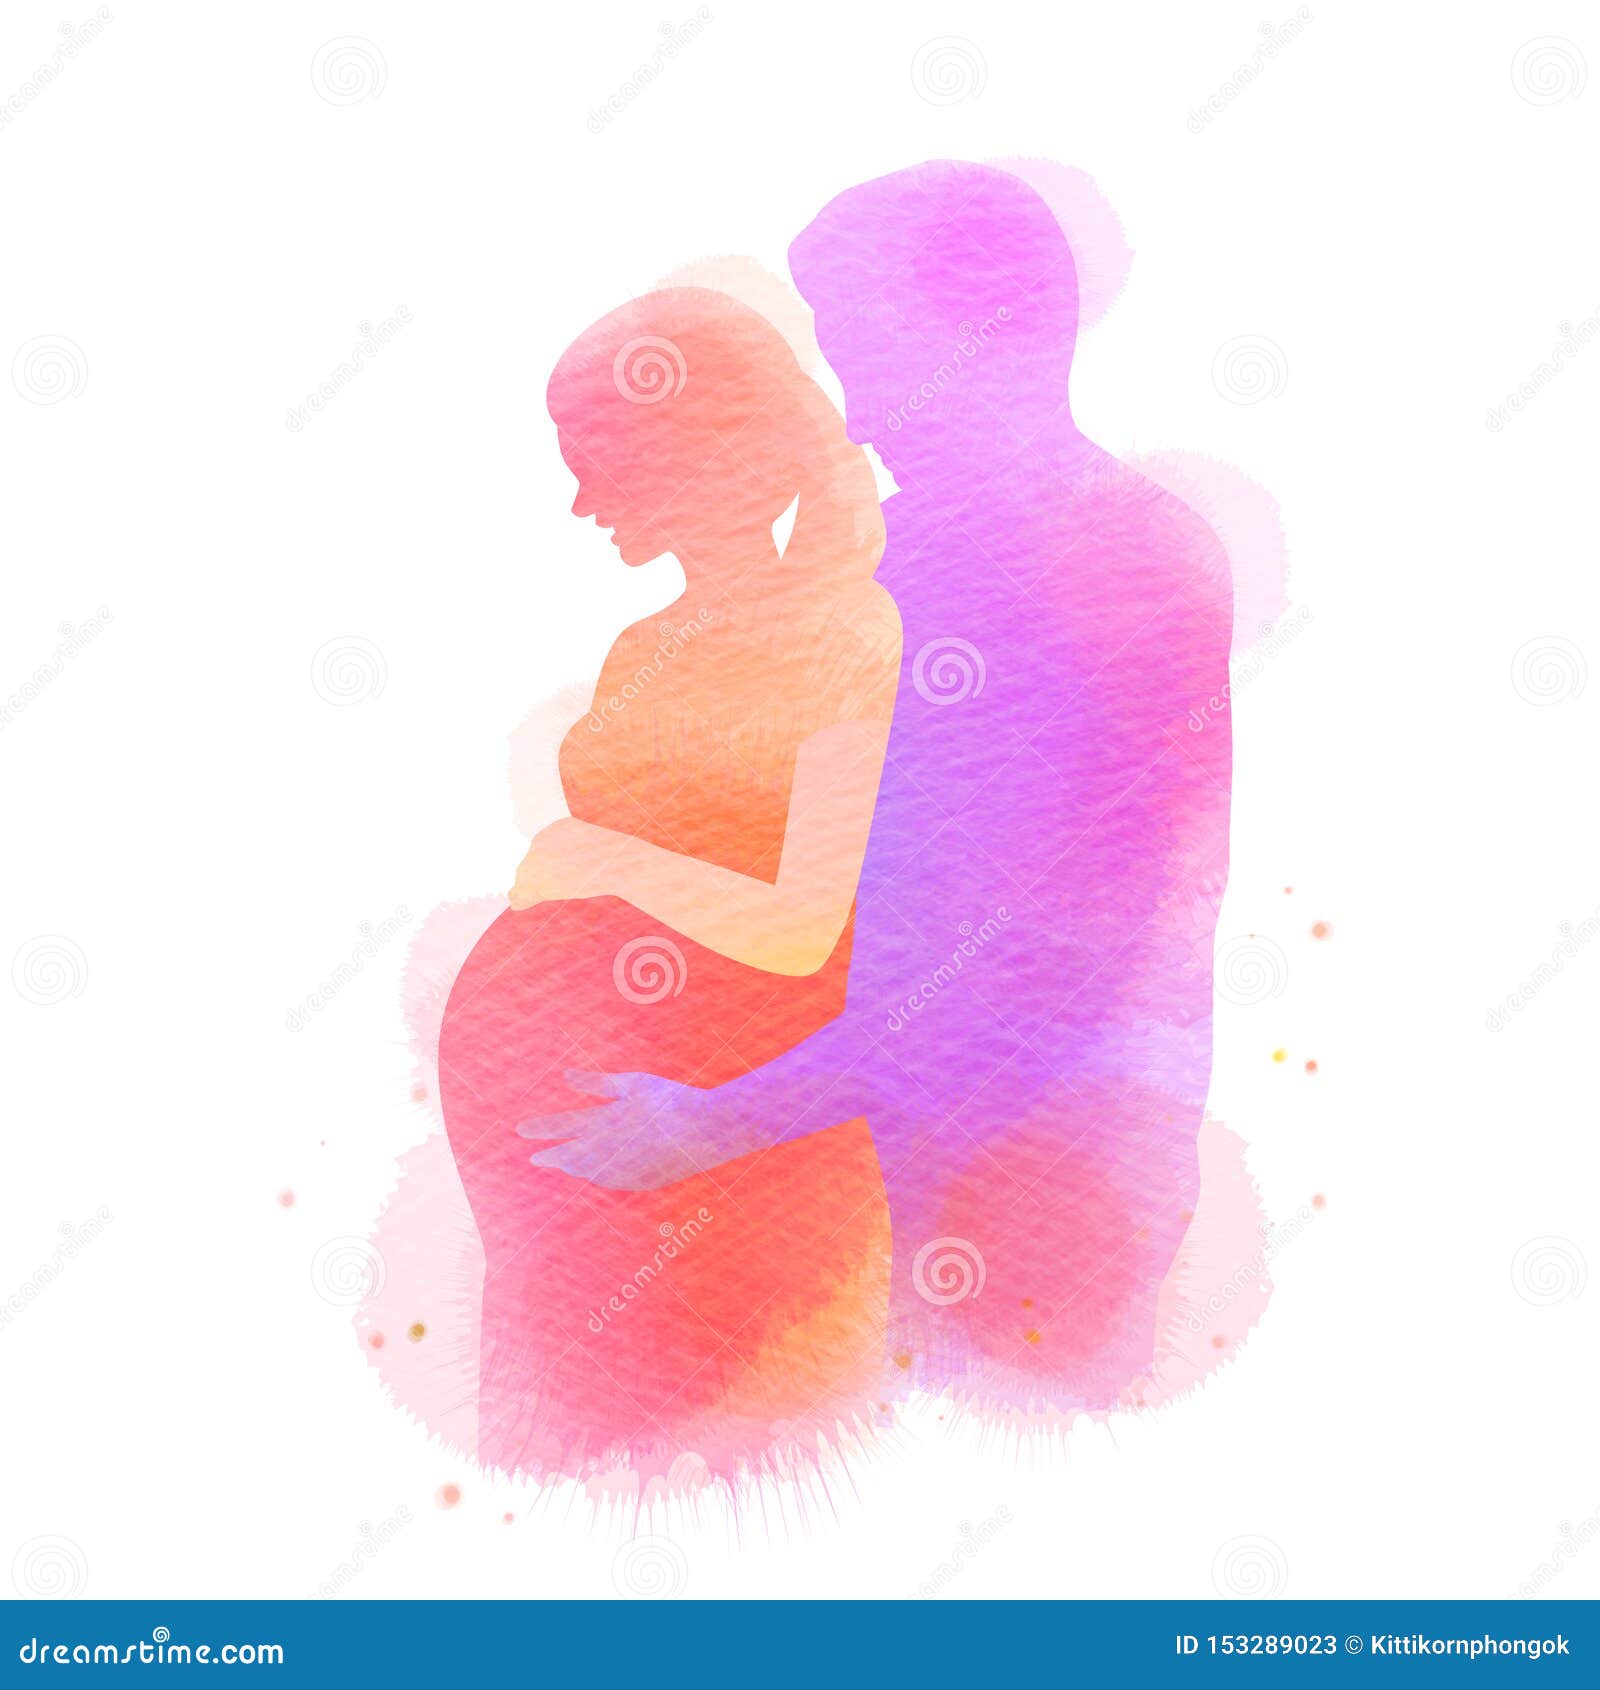 Dessin femme enceinte : 44 188 images, photos de stock, objets 3D et images  vectorielles